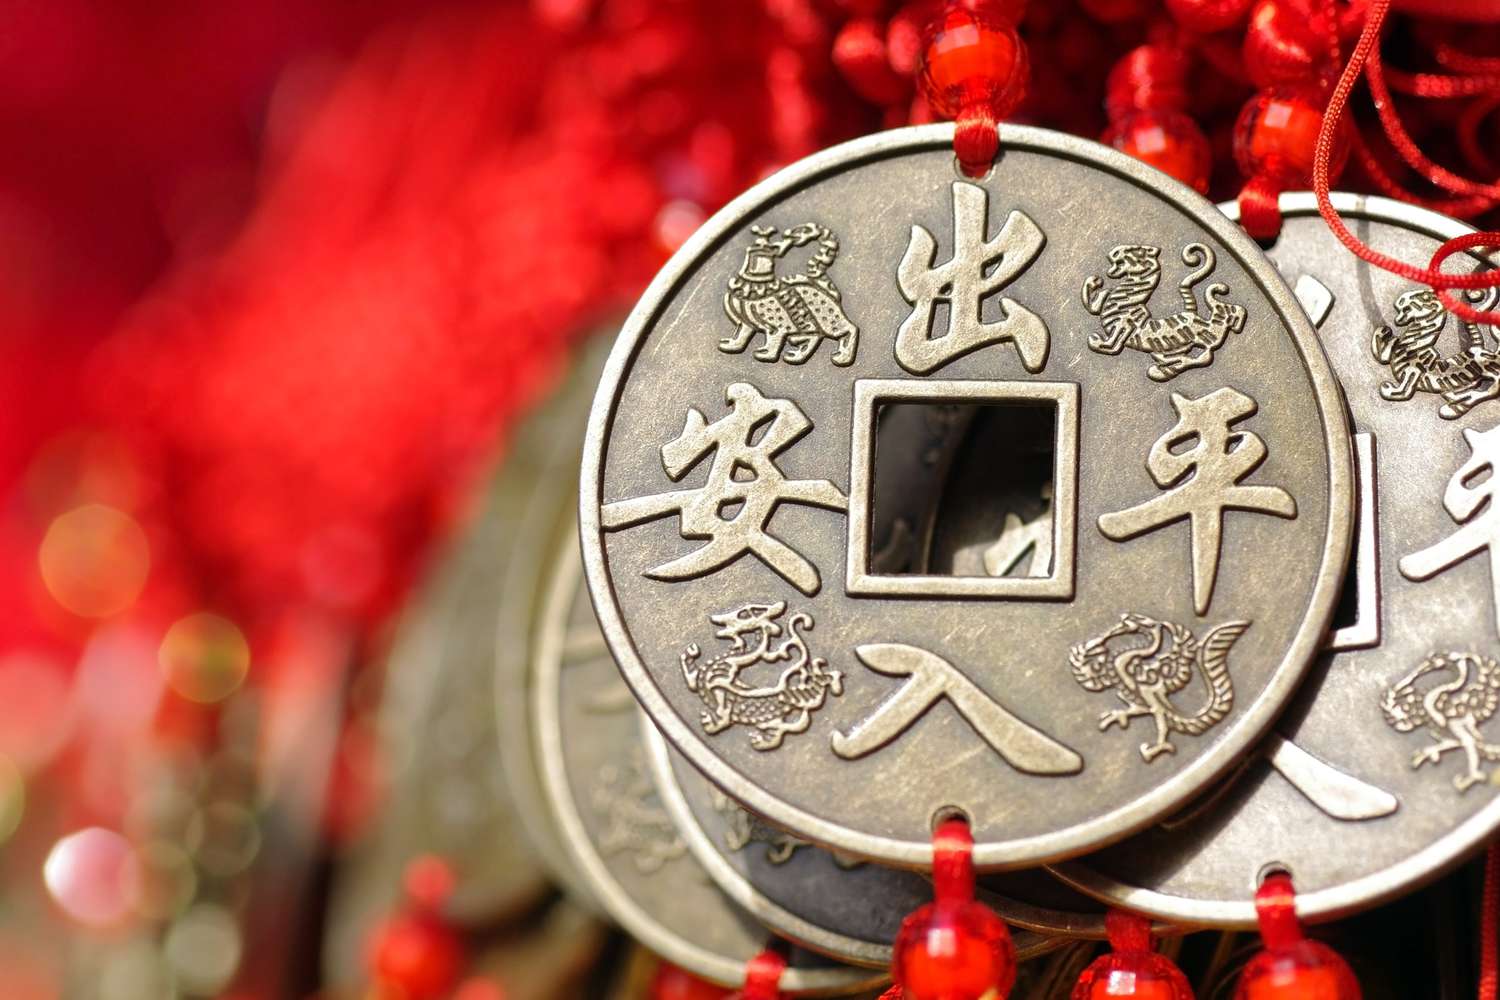 Decorações de borla de nó chinês com reproduções de moedas de cobre antigas.